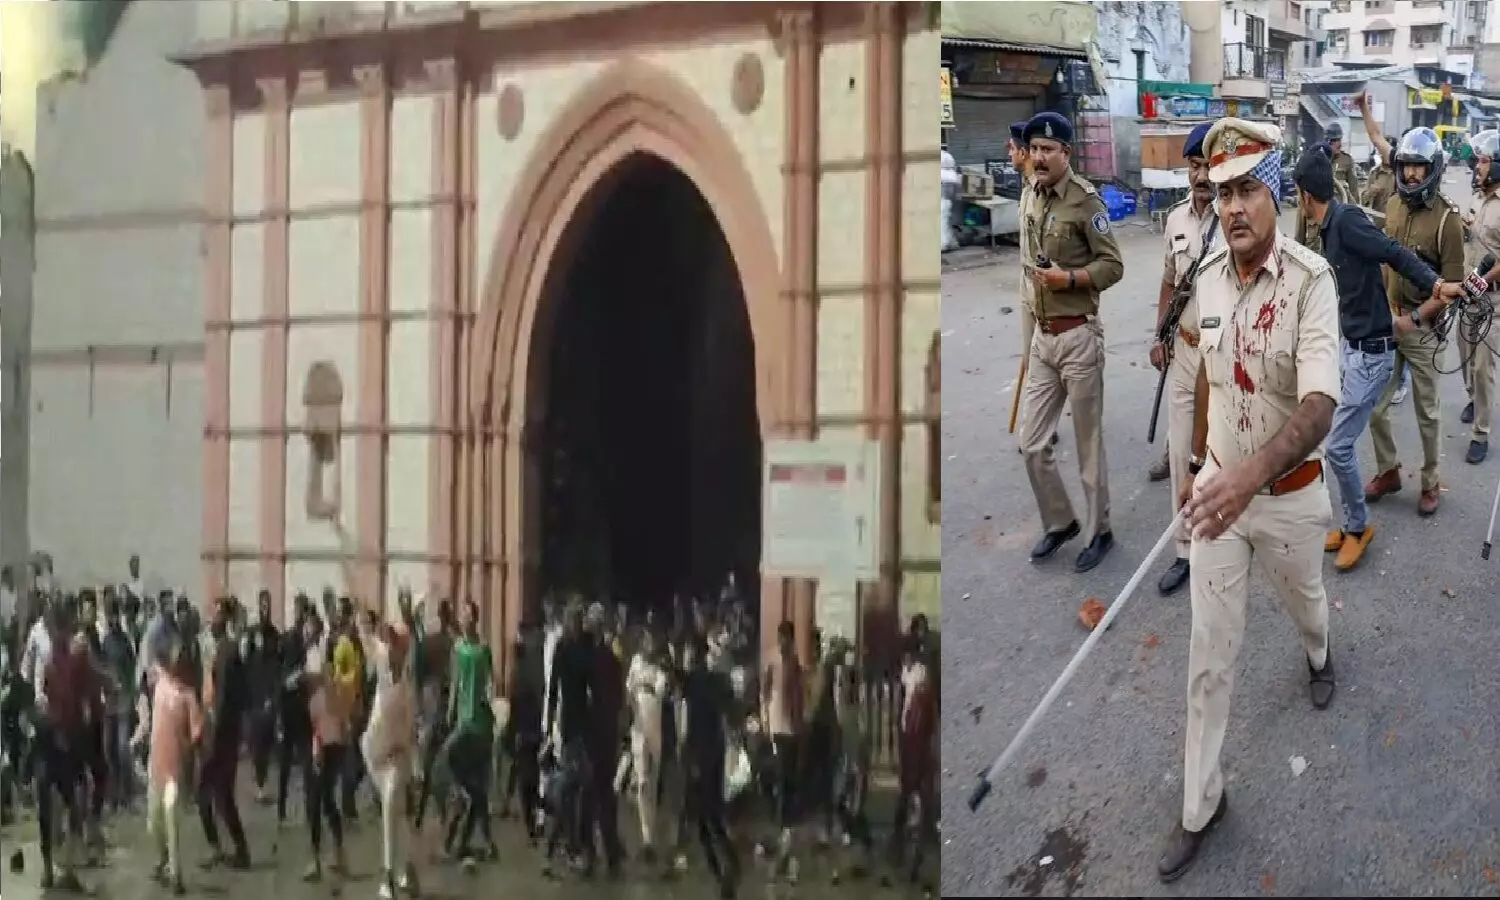 गुजरात में अवैध दरगाह को लेकर बवाल: मुसलमानों ने पुलिस-प्रशासन के लोगों पर हमला किया, गाड़ियां जला दीं! एक की मौत, कई पुलिसकर्मी घायल